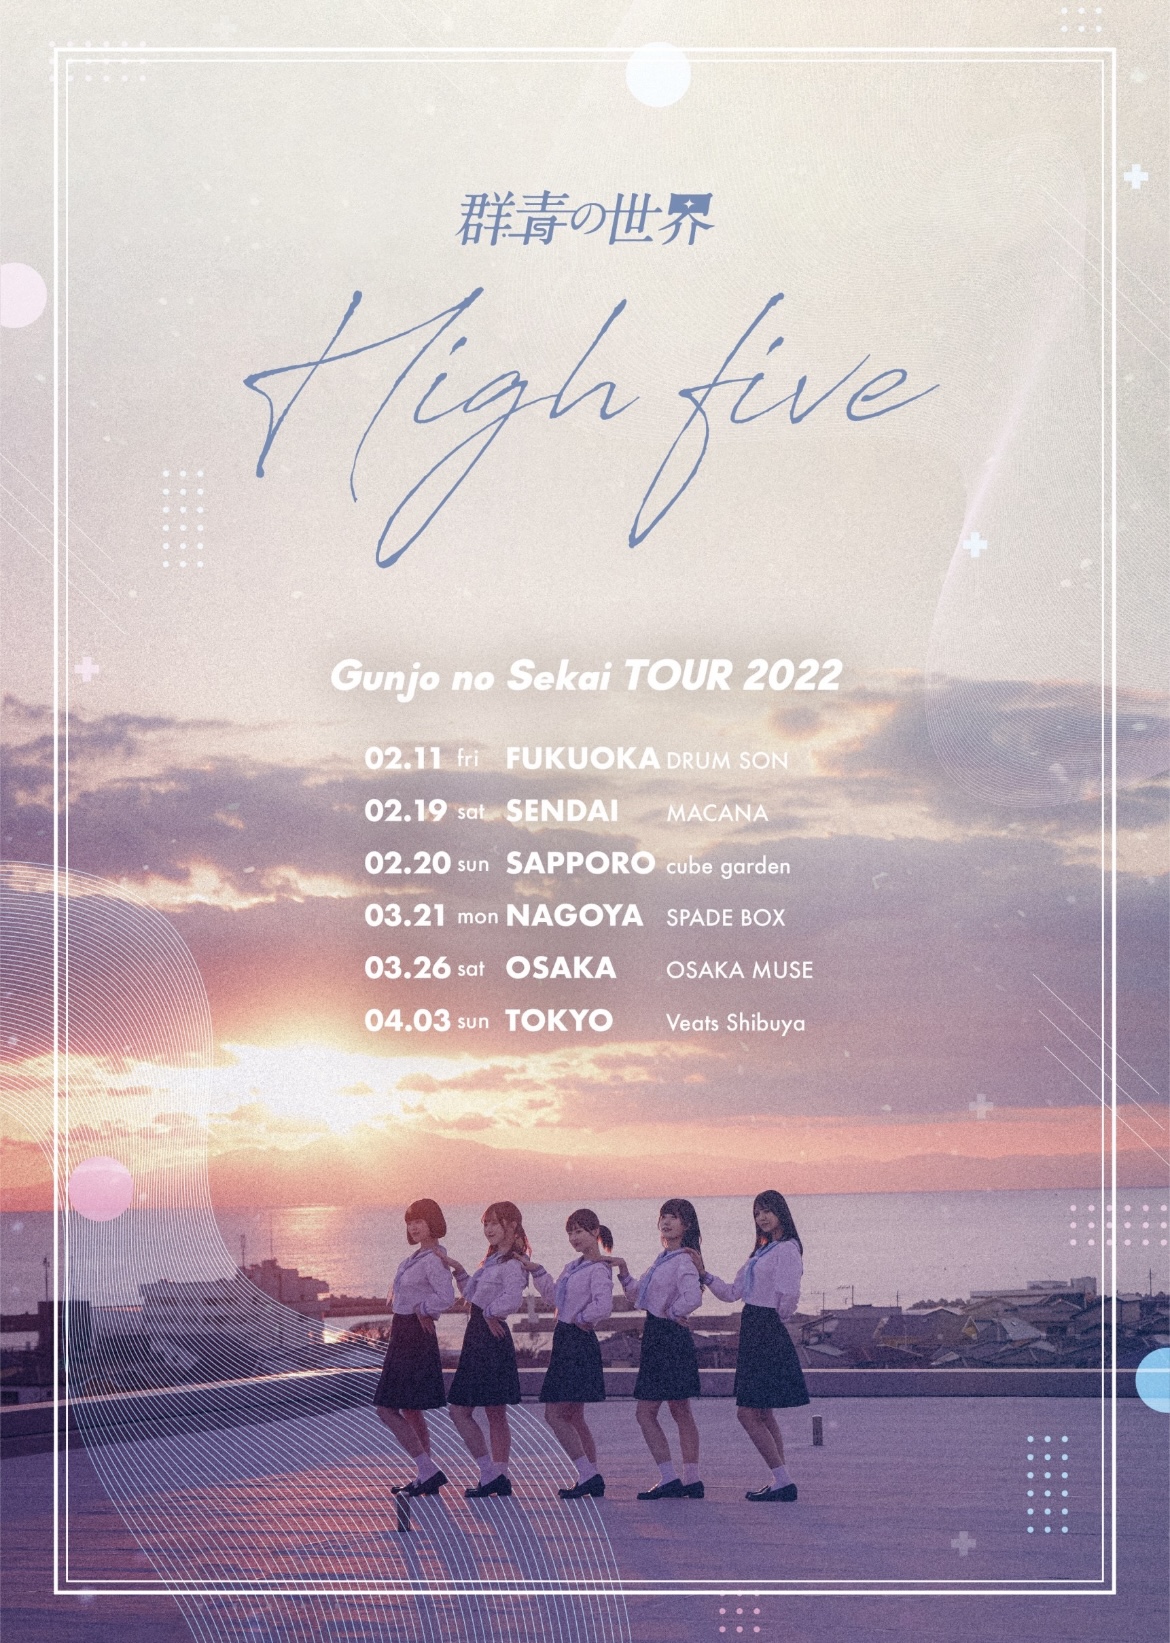 群青の世界 全国ツアー「High five」仙台公演